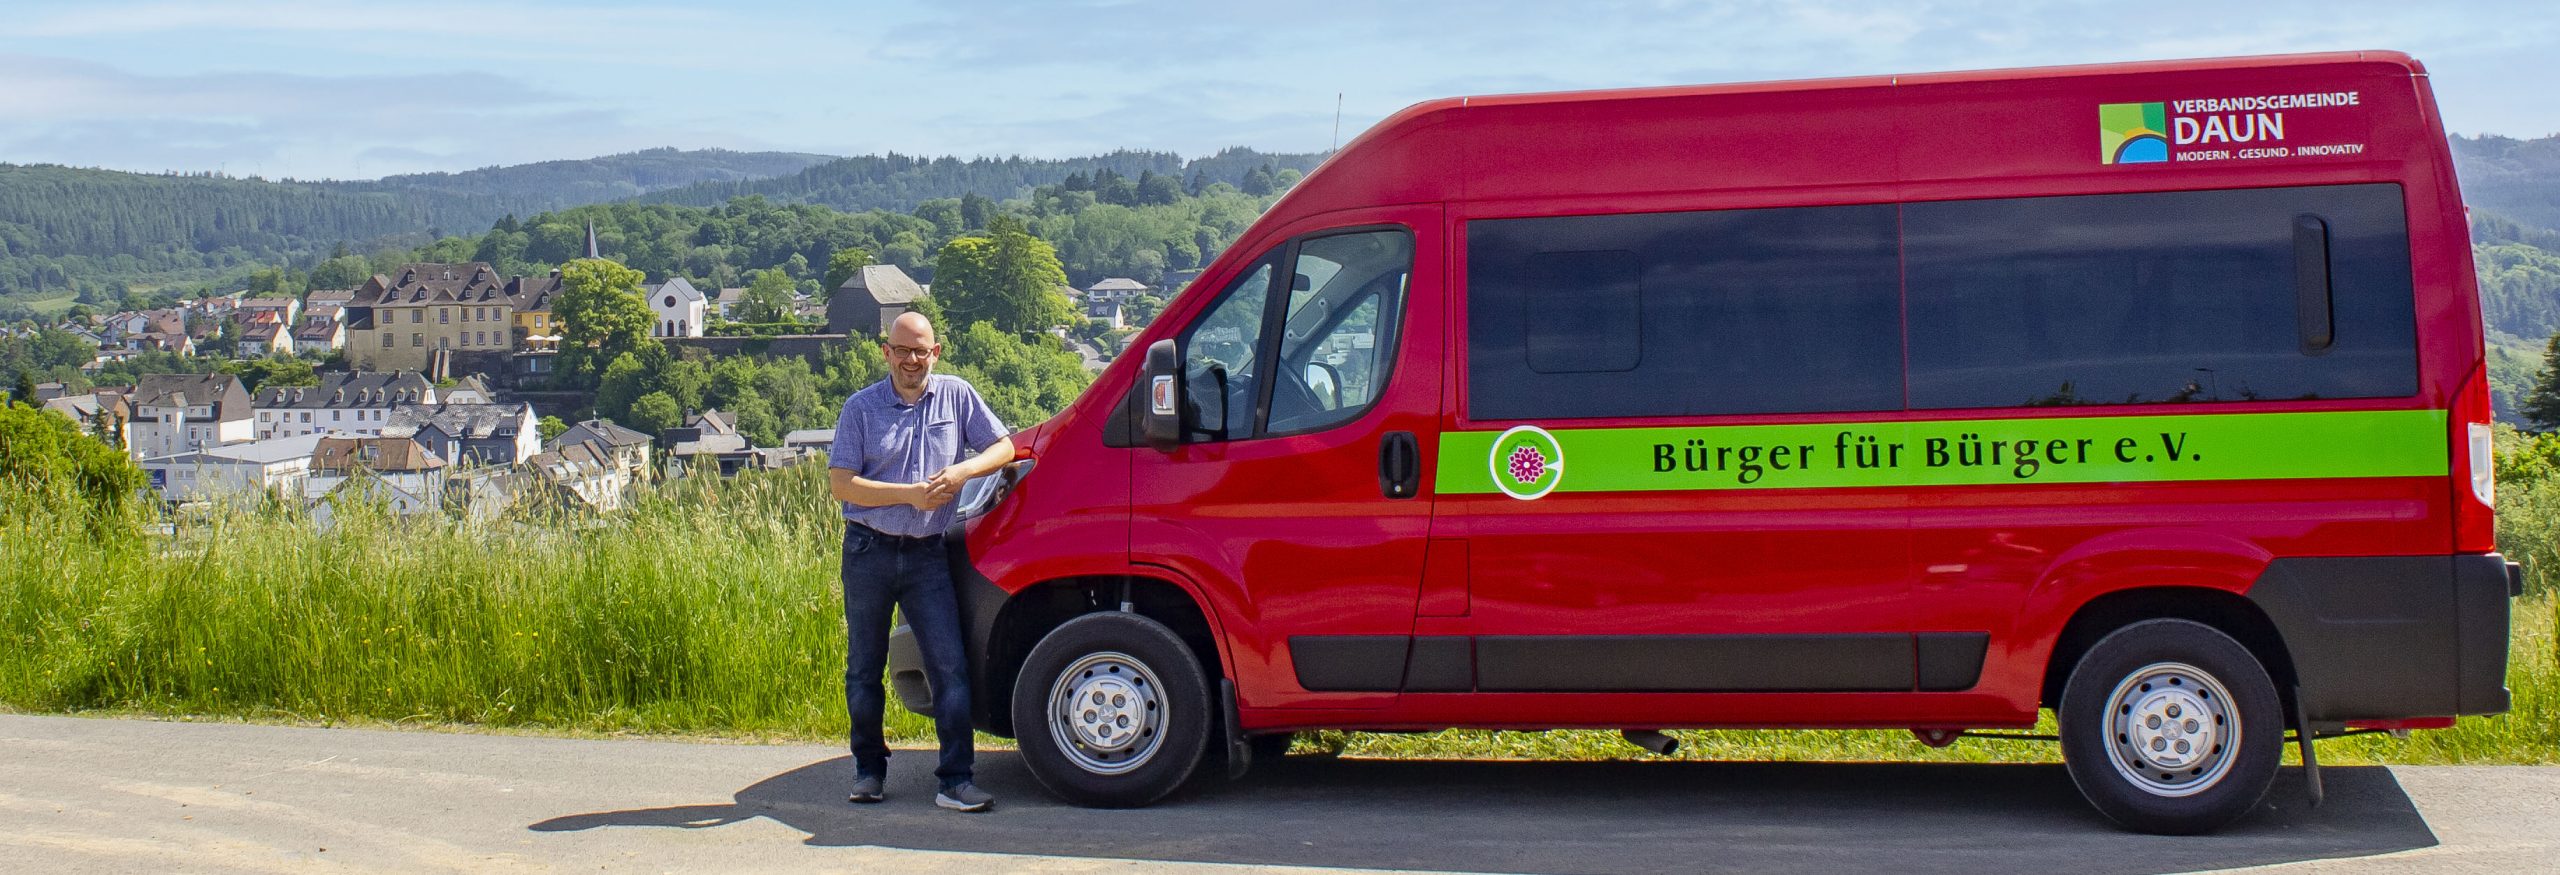 Auf dem Foto steht ein Mann neben einem roten Bus. Auf dem Bus steht die Aufschrift "Bürger für Bürger e.V.". Im Hintergrund ist die Landschaft der Vulkaneifel zu sehen.